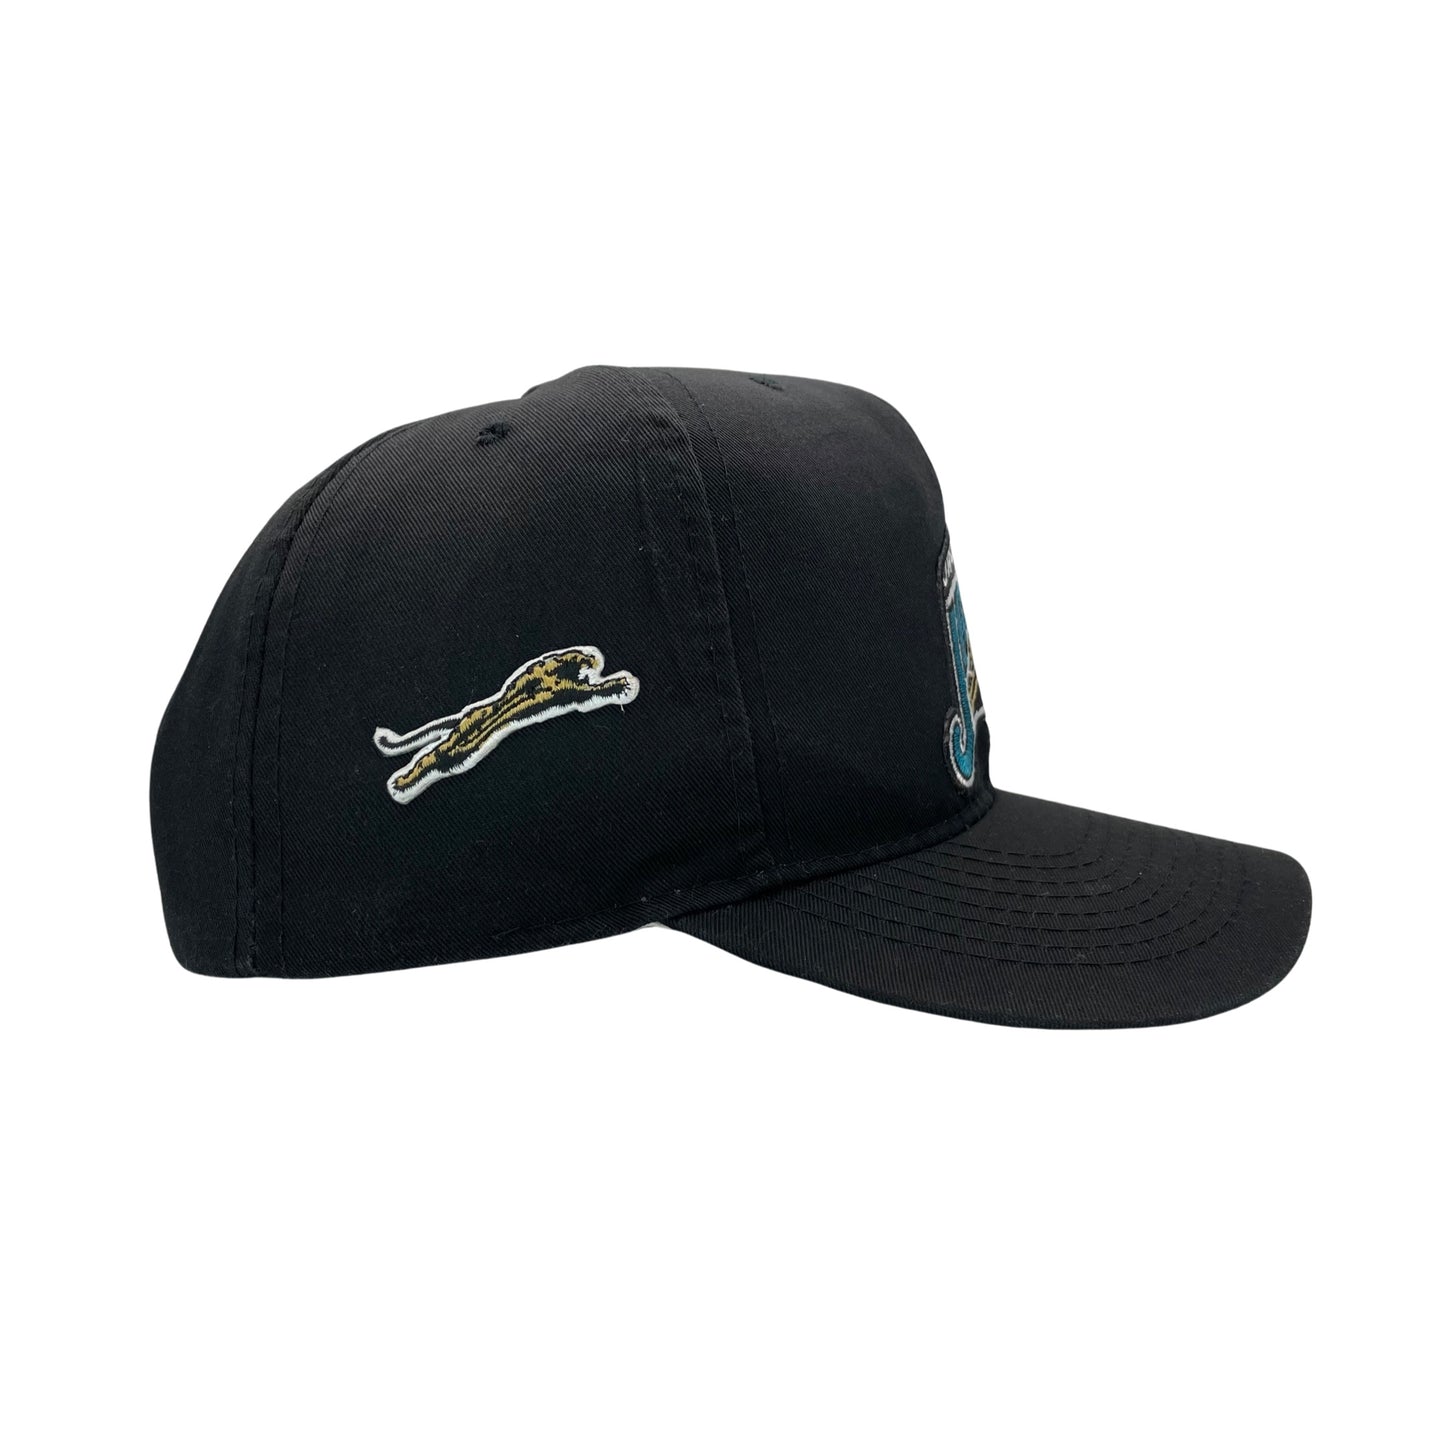 Vintage Jacksonville Jaguars banned logo hat